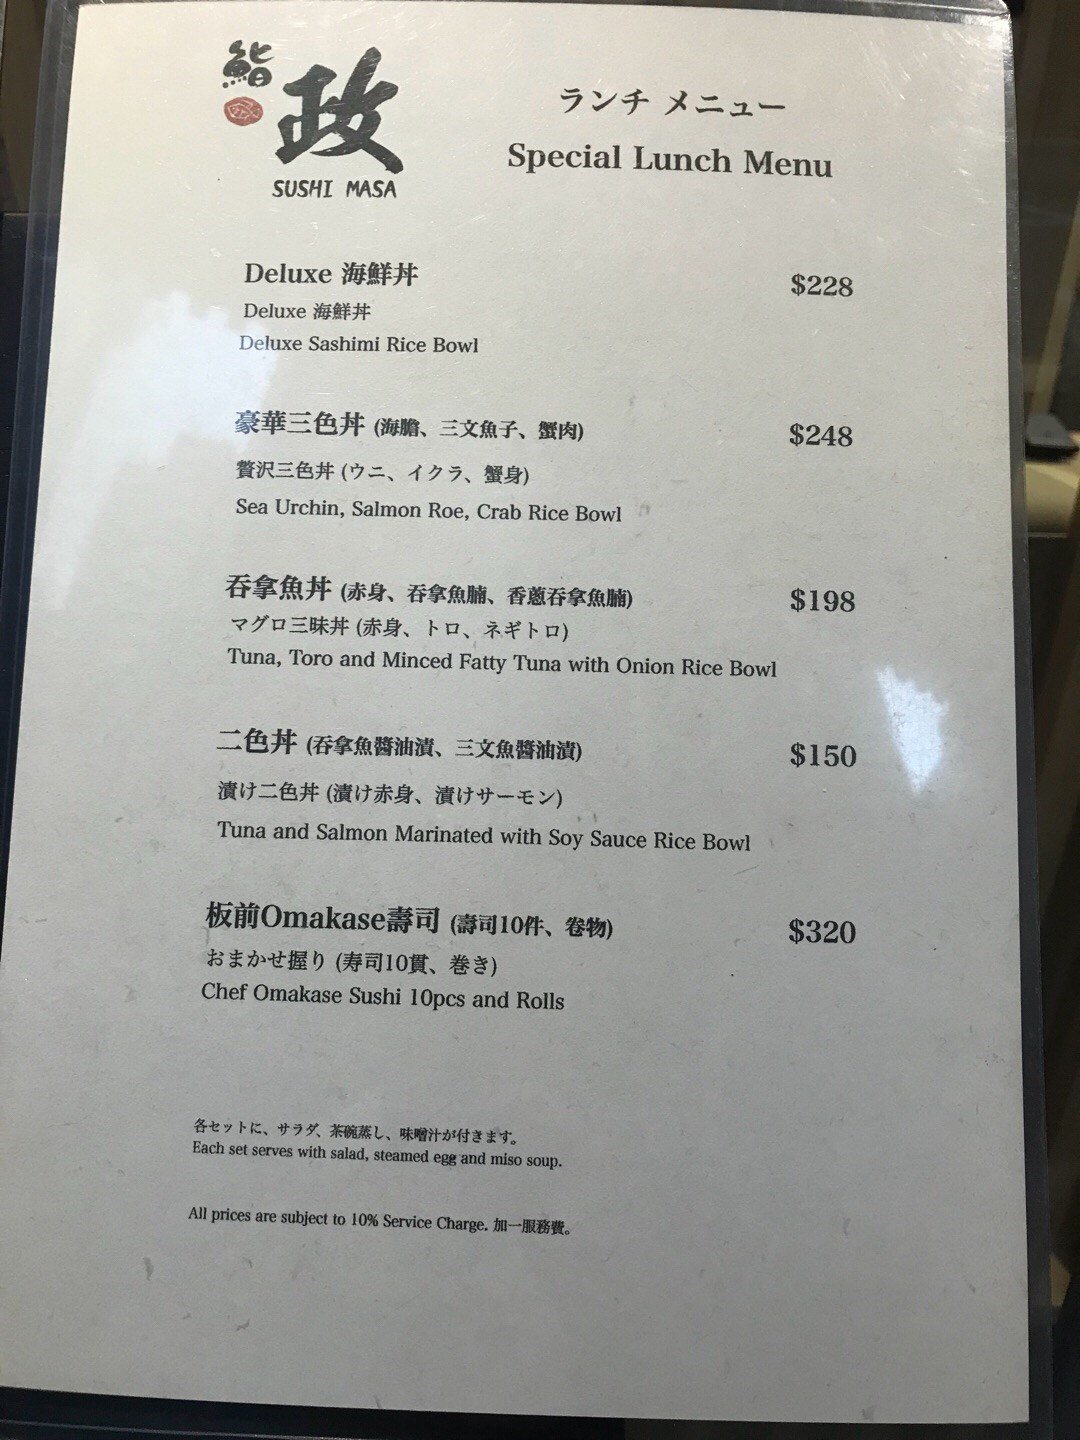 Sushi Masa In Sheung Wan Hong Kong Openrice Hong Kong